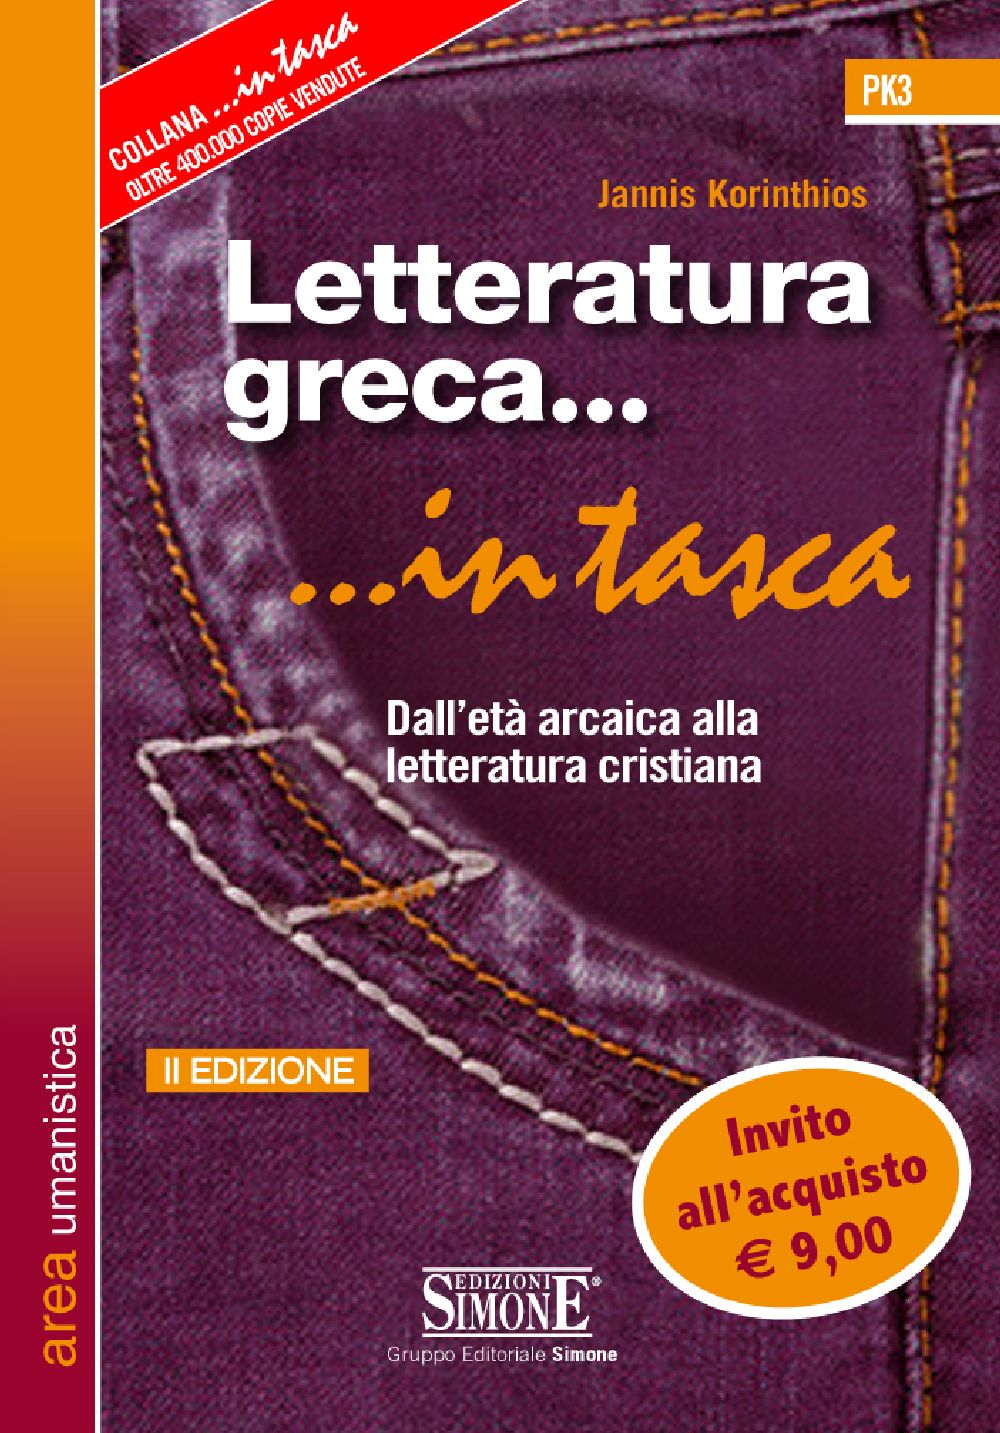 [Ebook] Letteratura greca... in tasca